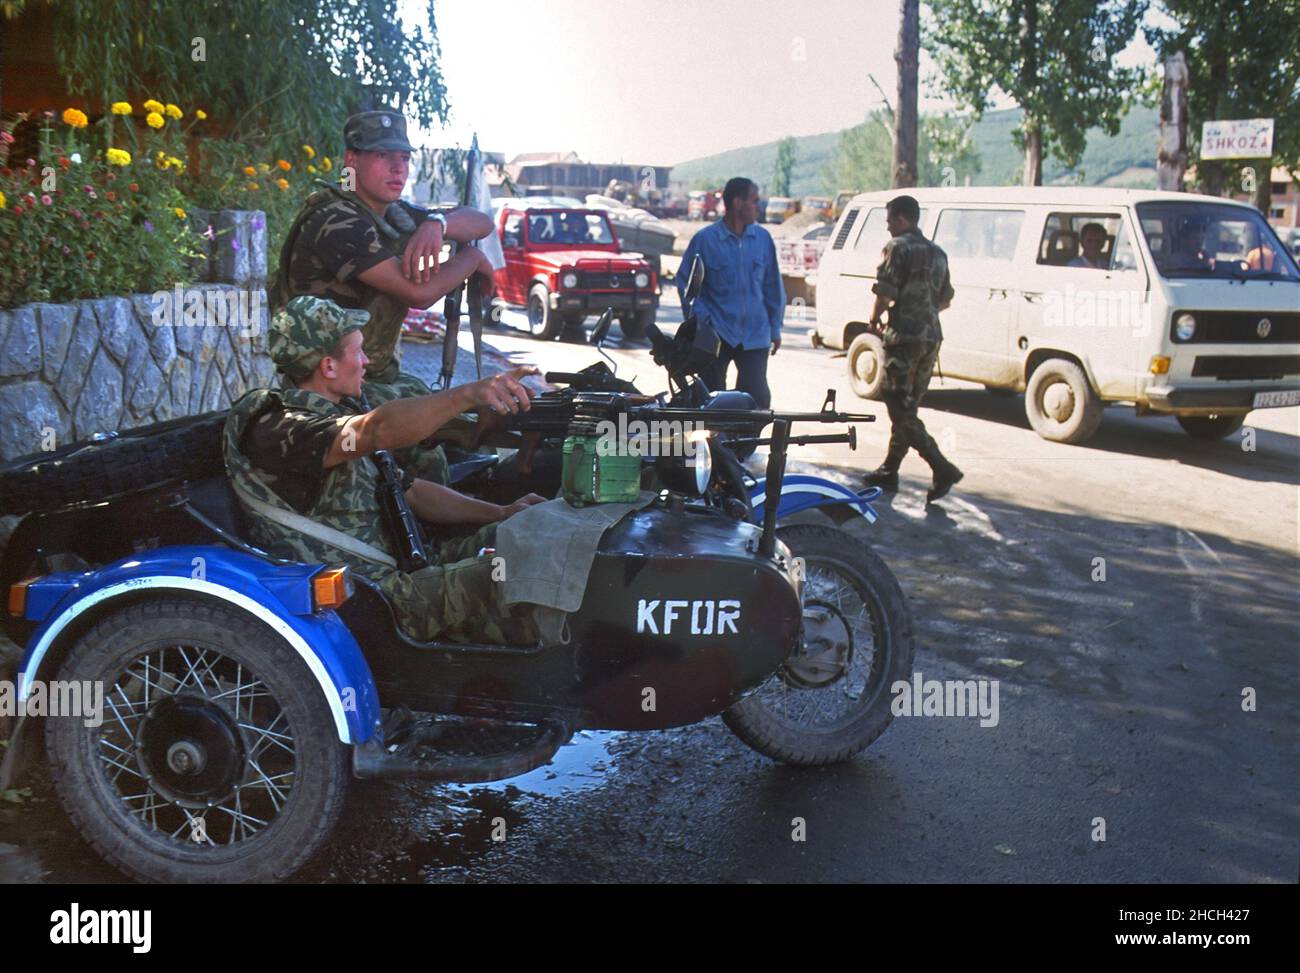 - NATO intervention in Kosovo, Russian soldiers near Pristina airport (July 2000)   - Intervento NATO in Kossovo, soldati russi nei pressi dell'aeroporto di Pristina  (Luglio 2000) Stock Photo